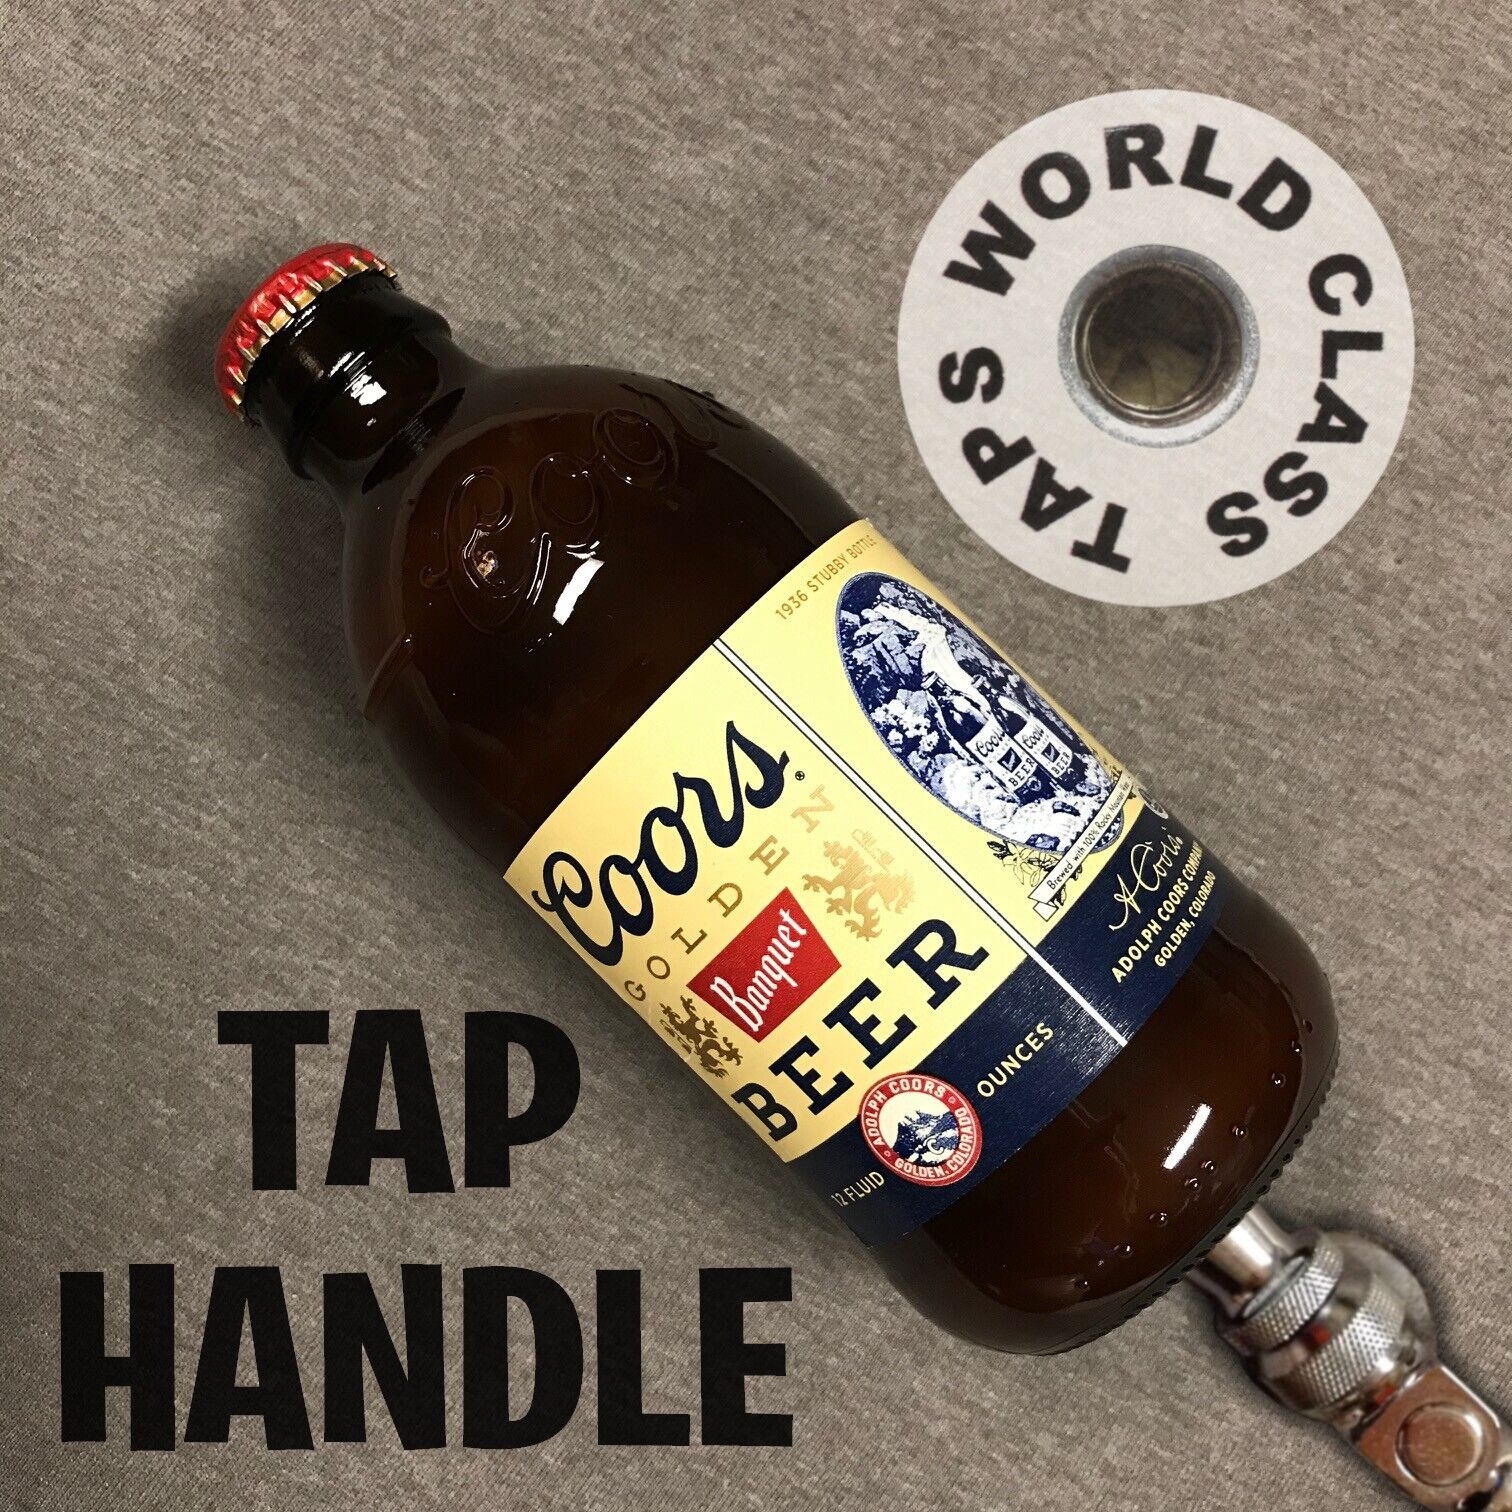 nice COORS ORIGINAL BANQUET beer bottle TAP HANDLE marker tapper knob